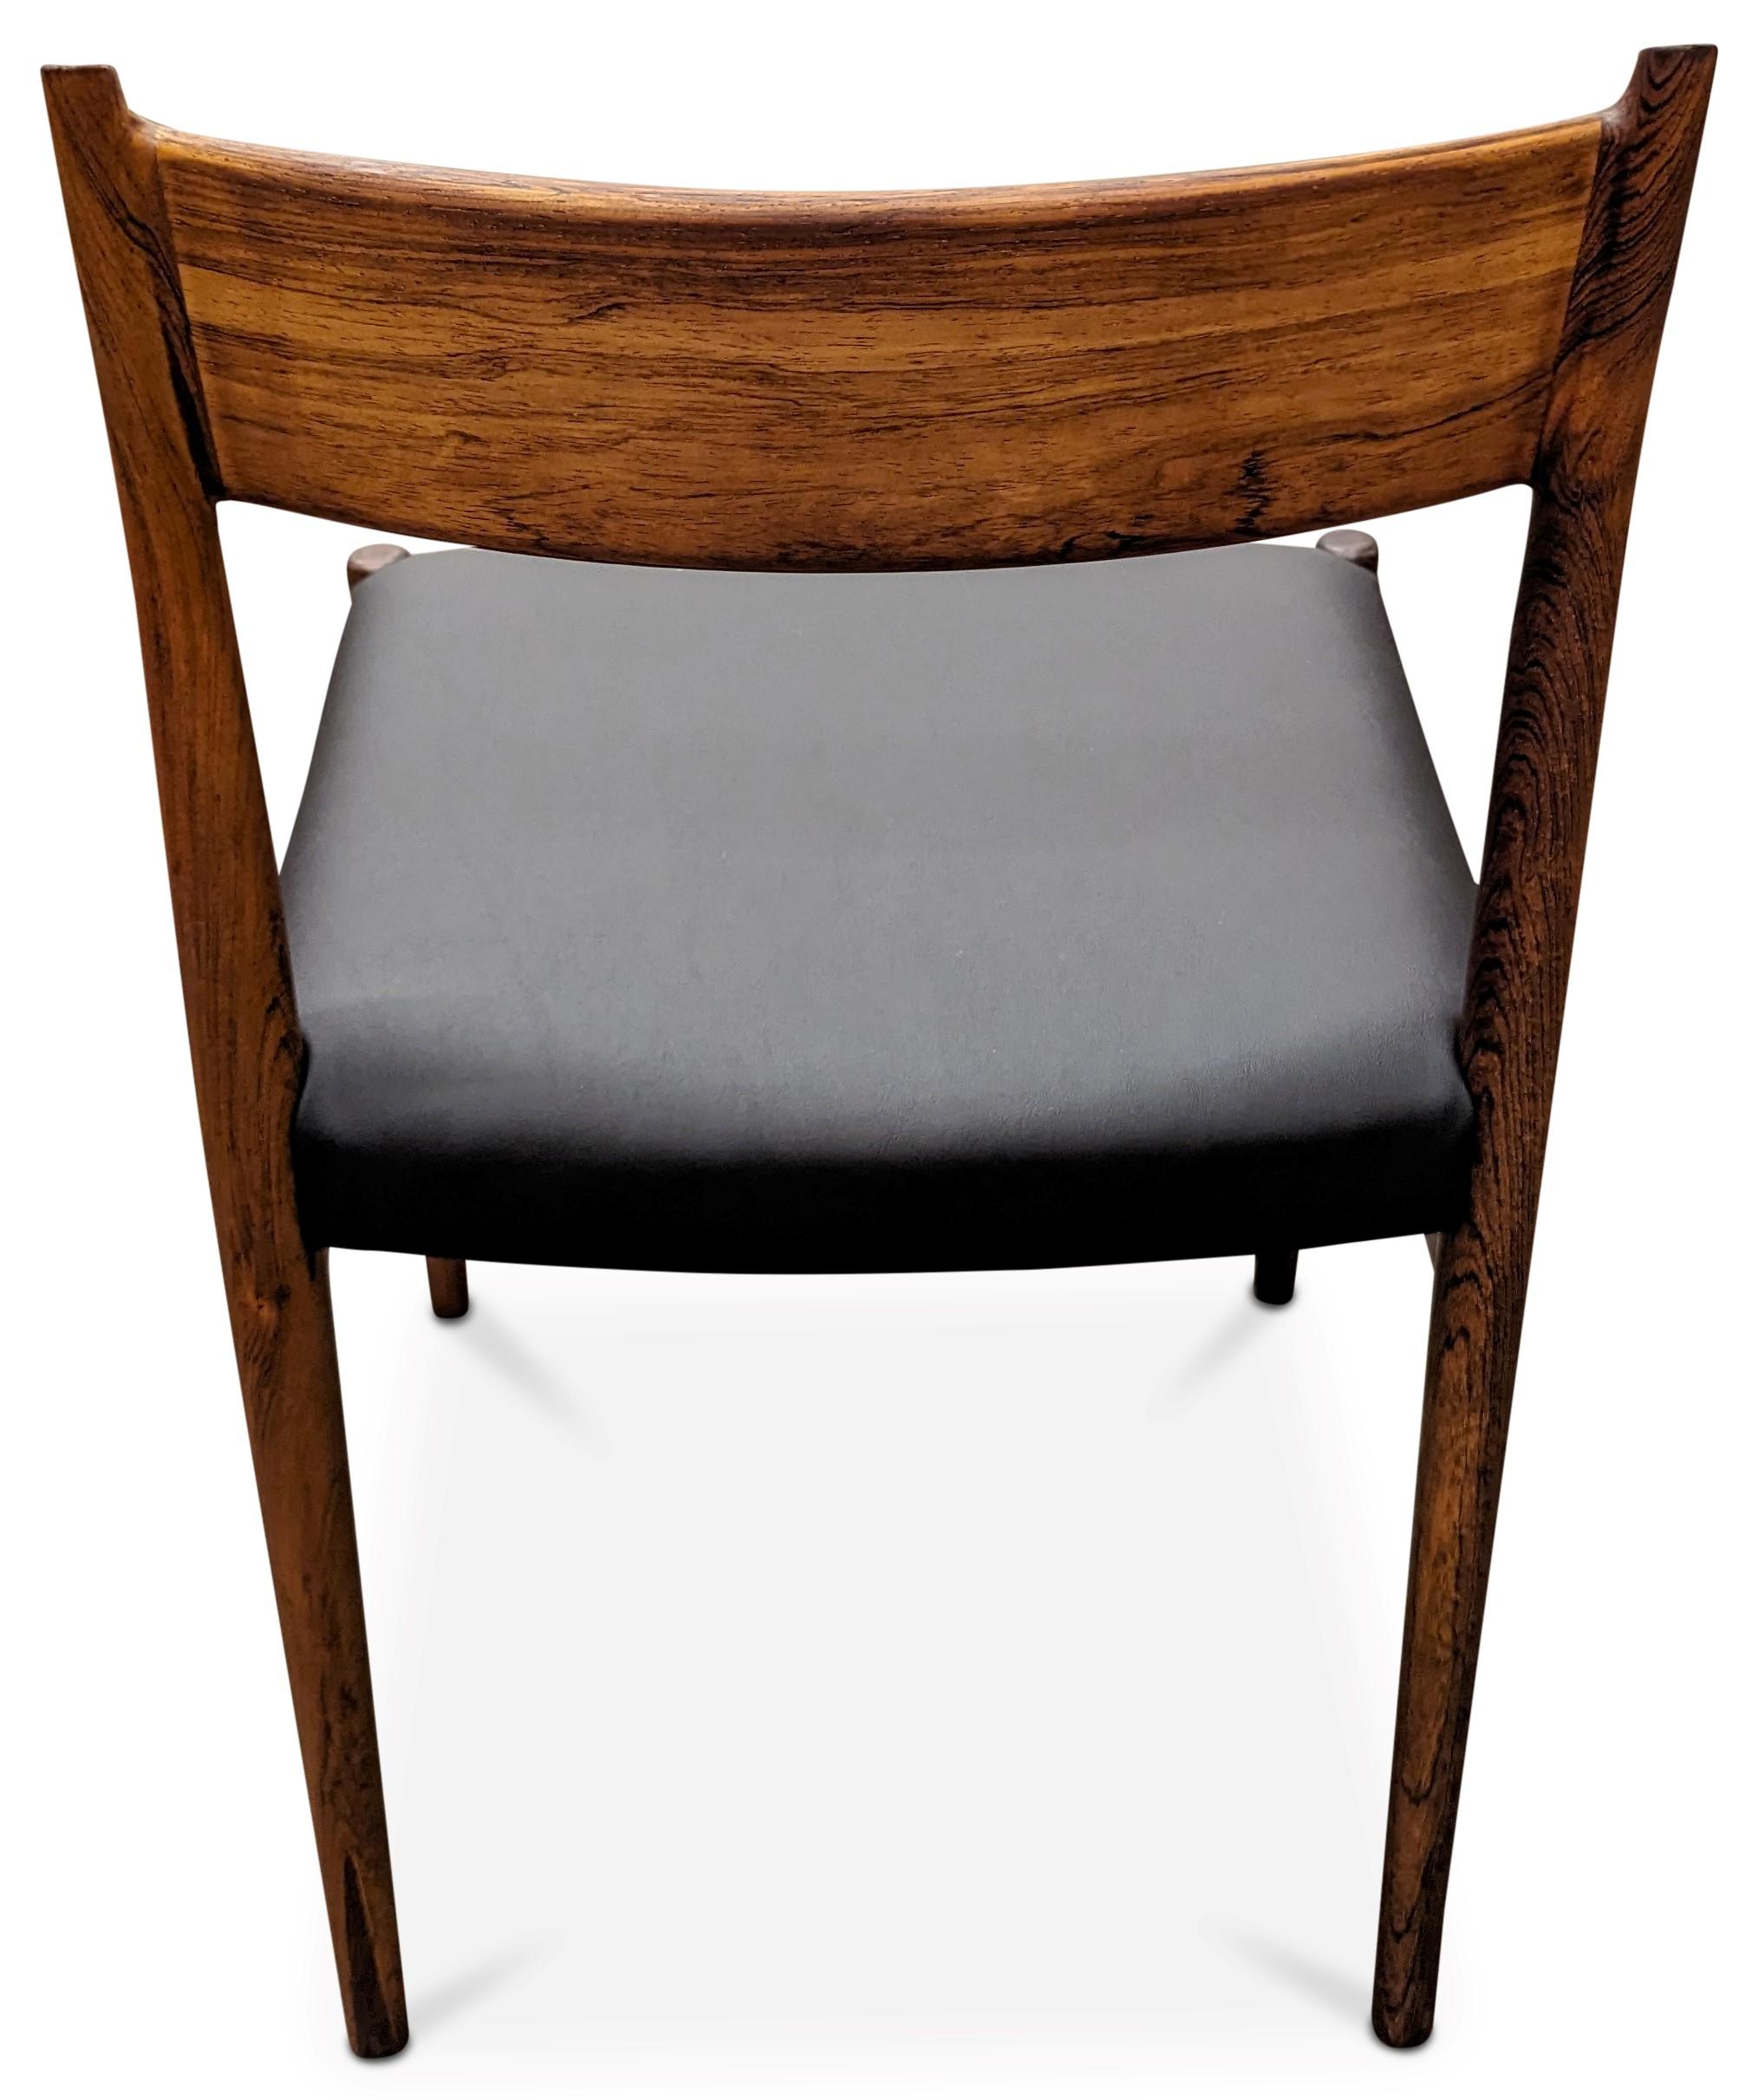 Vintage Danish Arne Vodder for Sibast Mobler Rosewood Dining Chair - 082316 For Sale 2